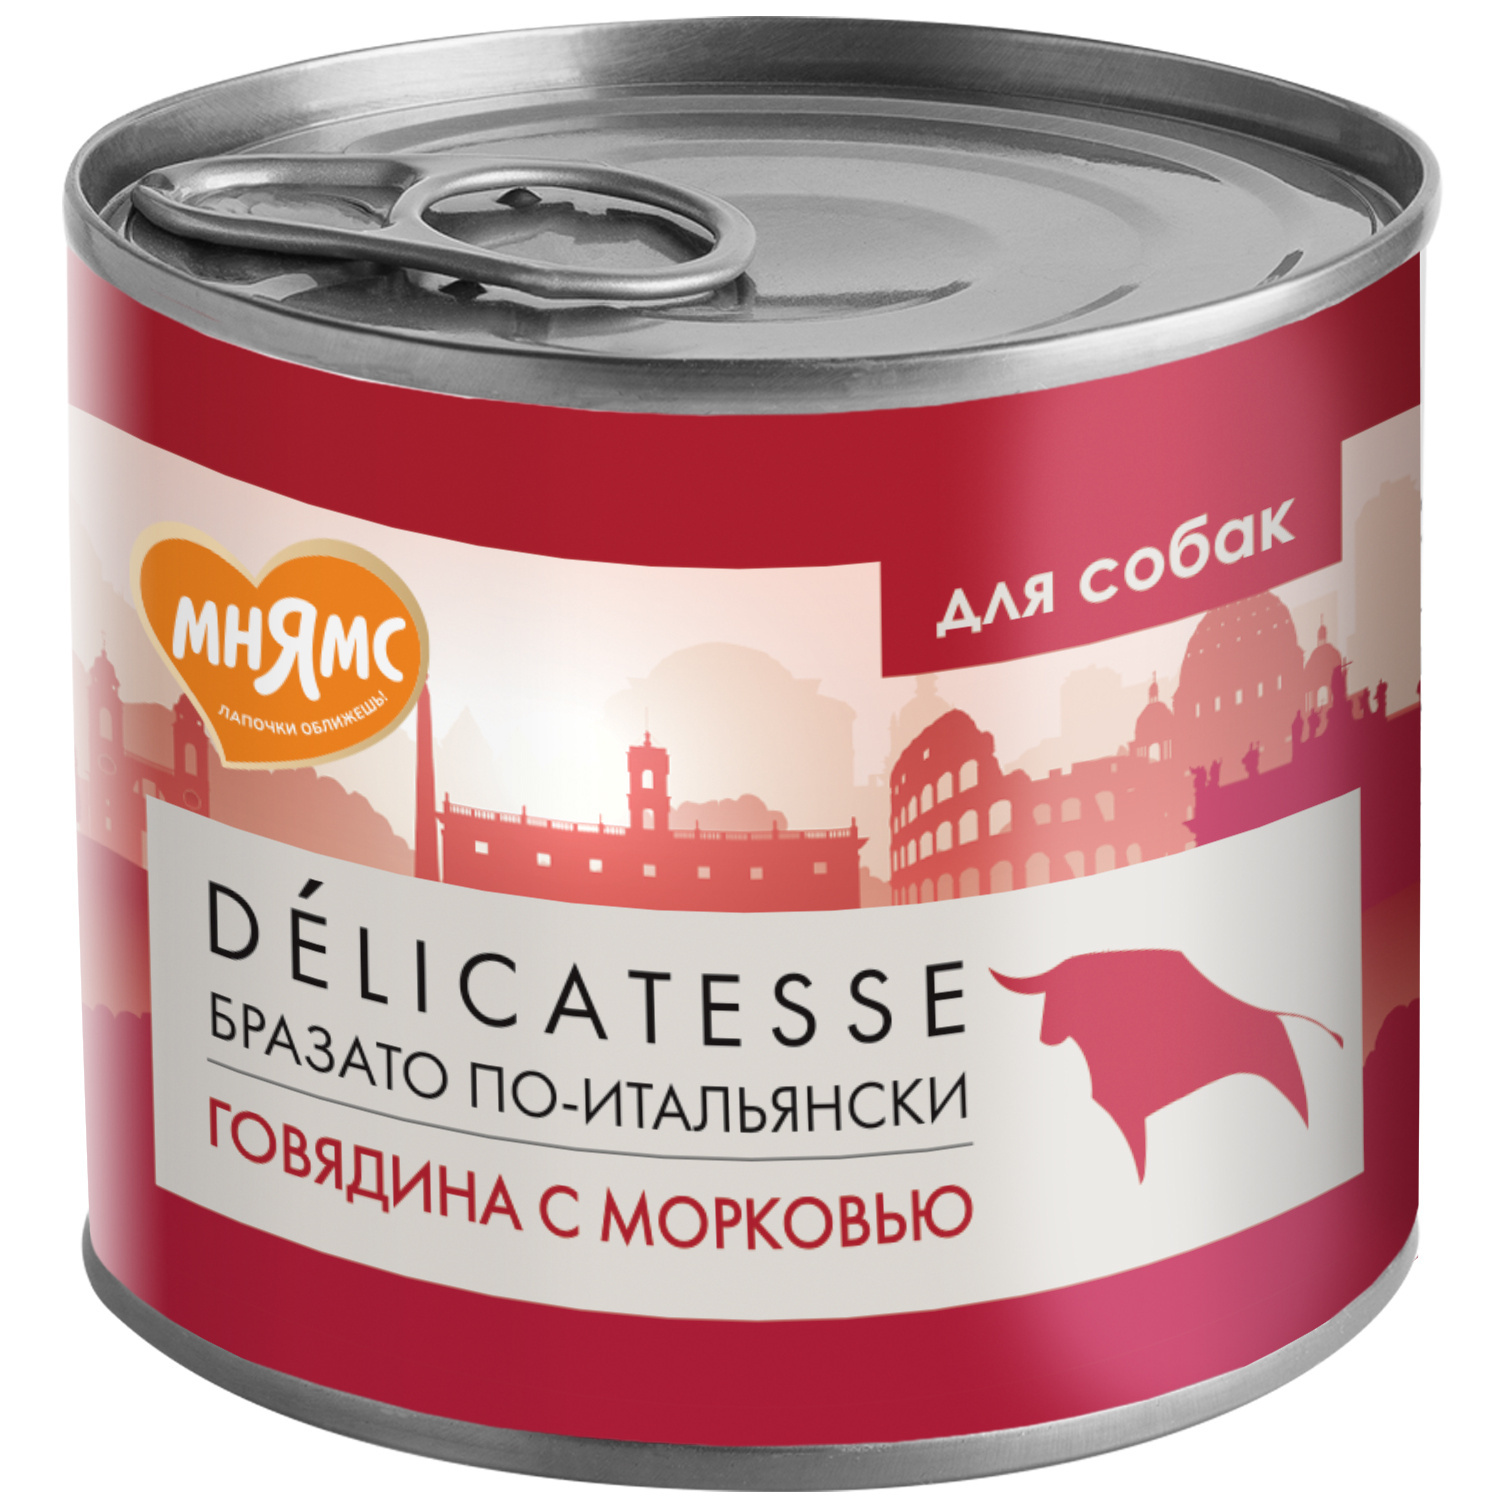 Мнямс Мнямс консервы Бразато по-итальянски для собак всех пород из говядины с морковью (200 г) мнямс мнямс консервы жаркое по фински для собак всех пород из перепёлки с травами 200 г